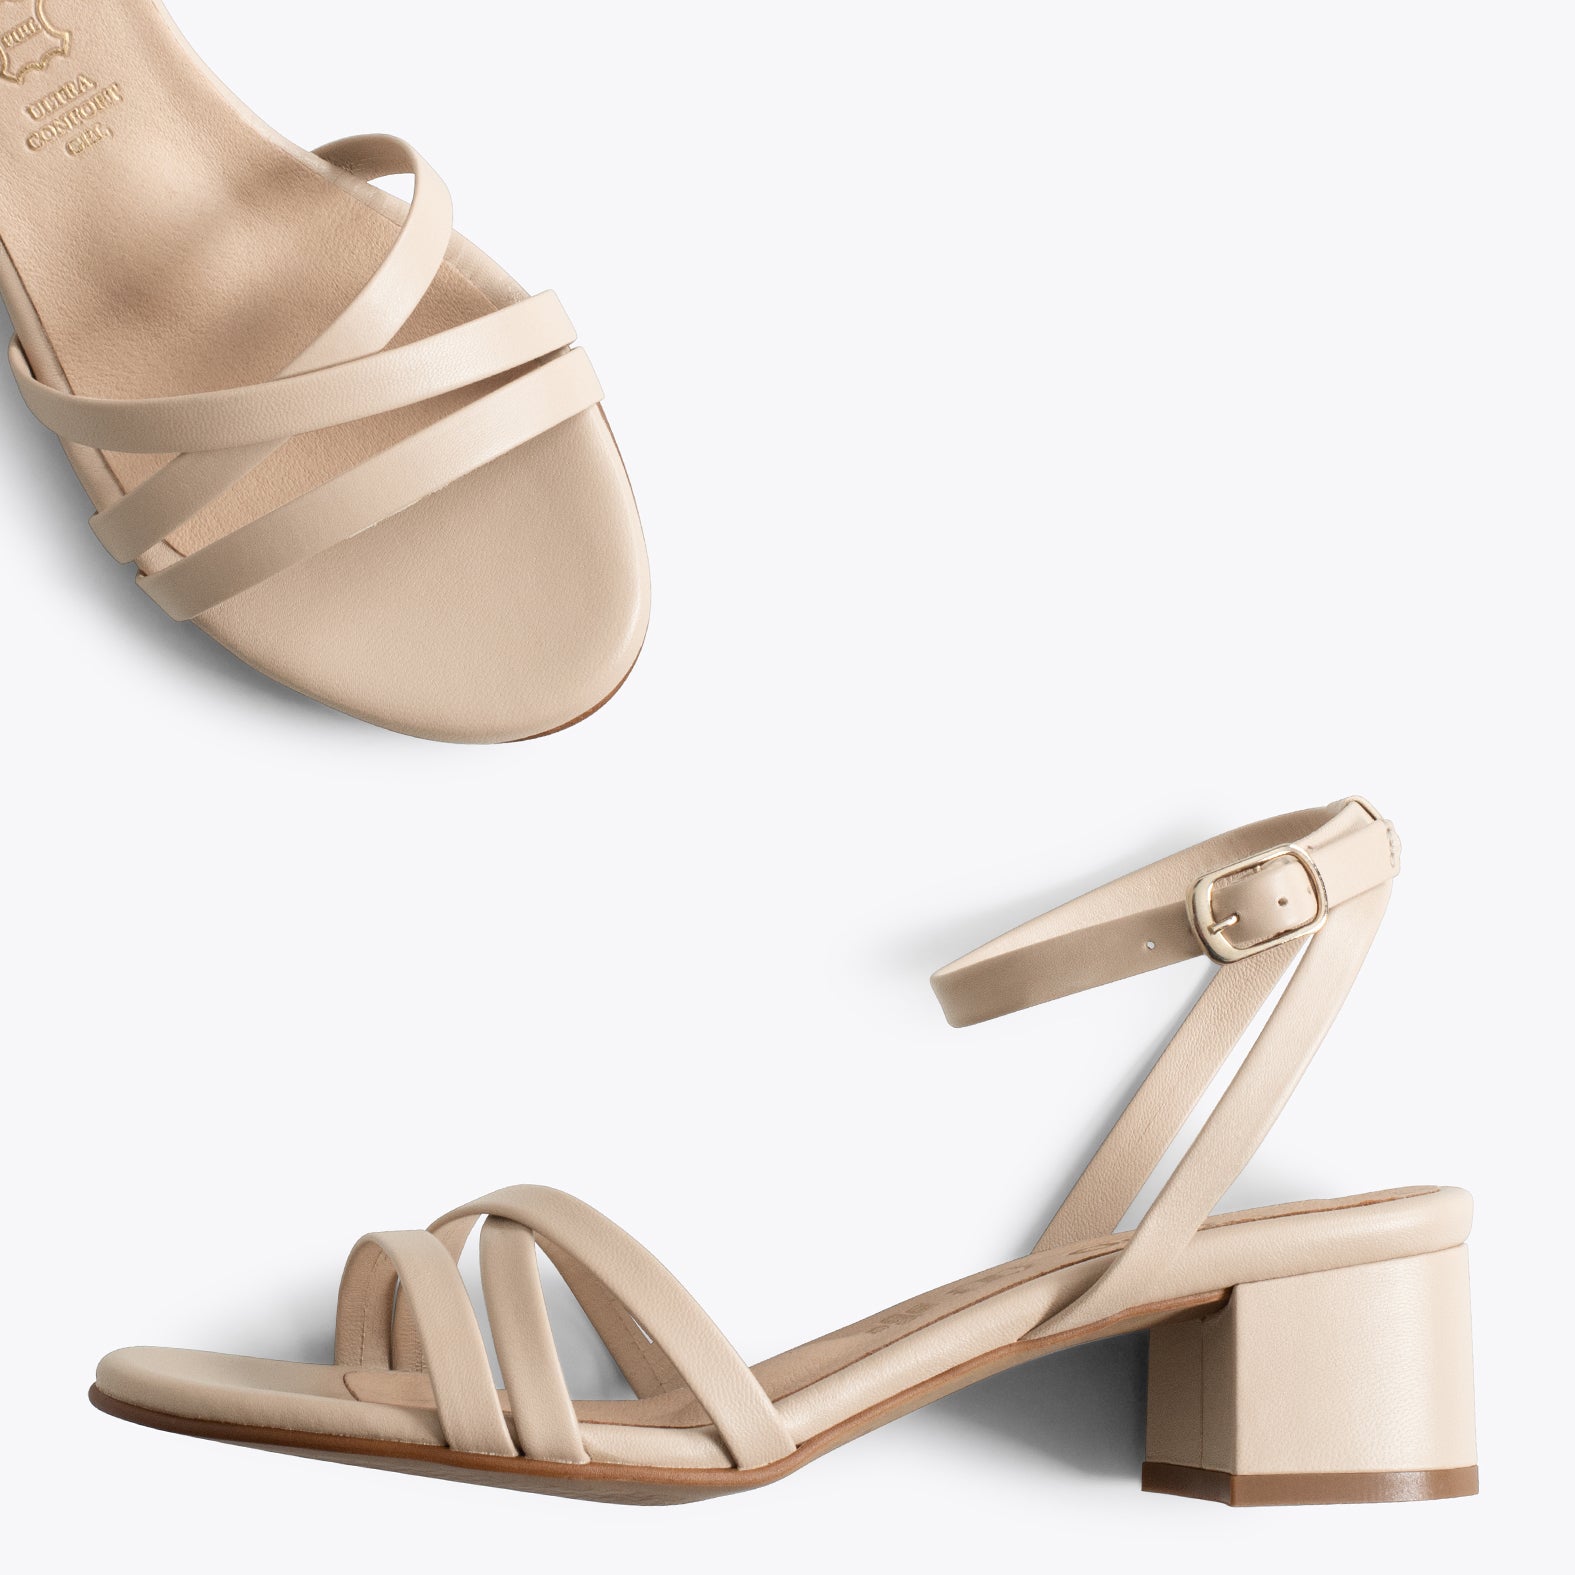 VIENA – VANILLA sandals with straps